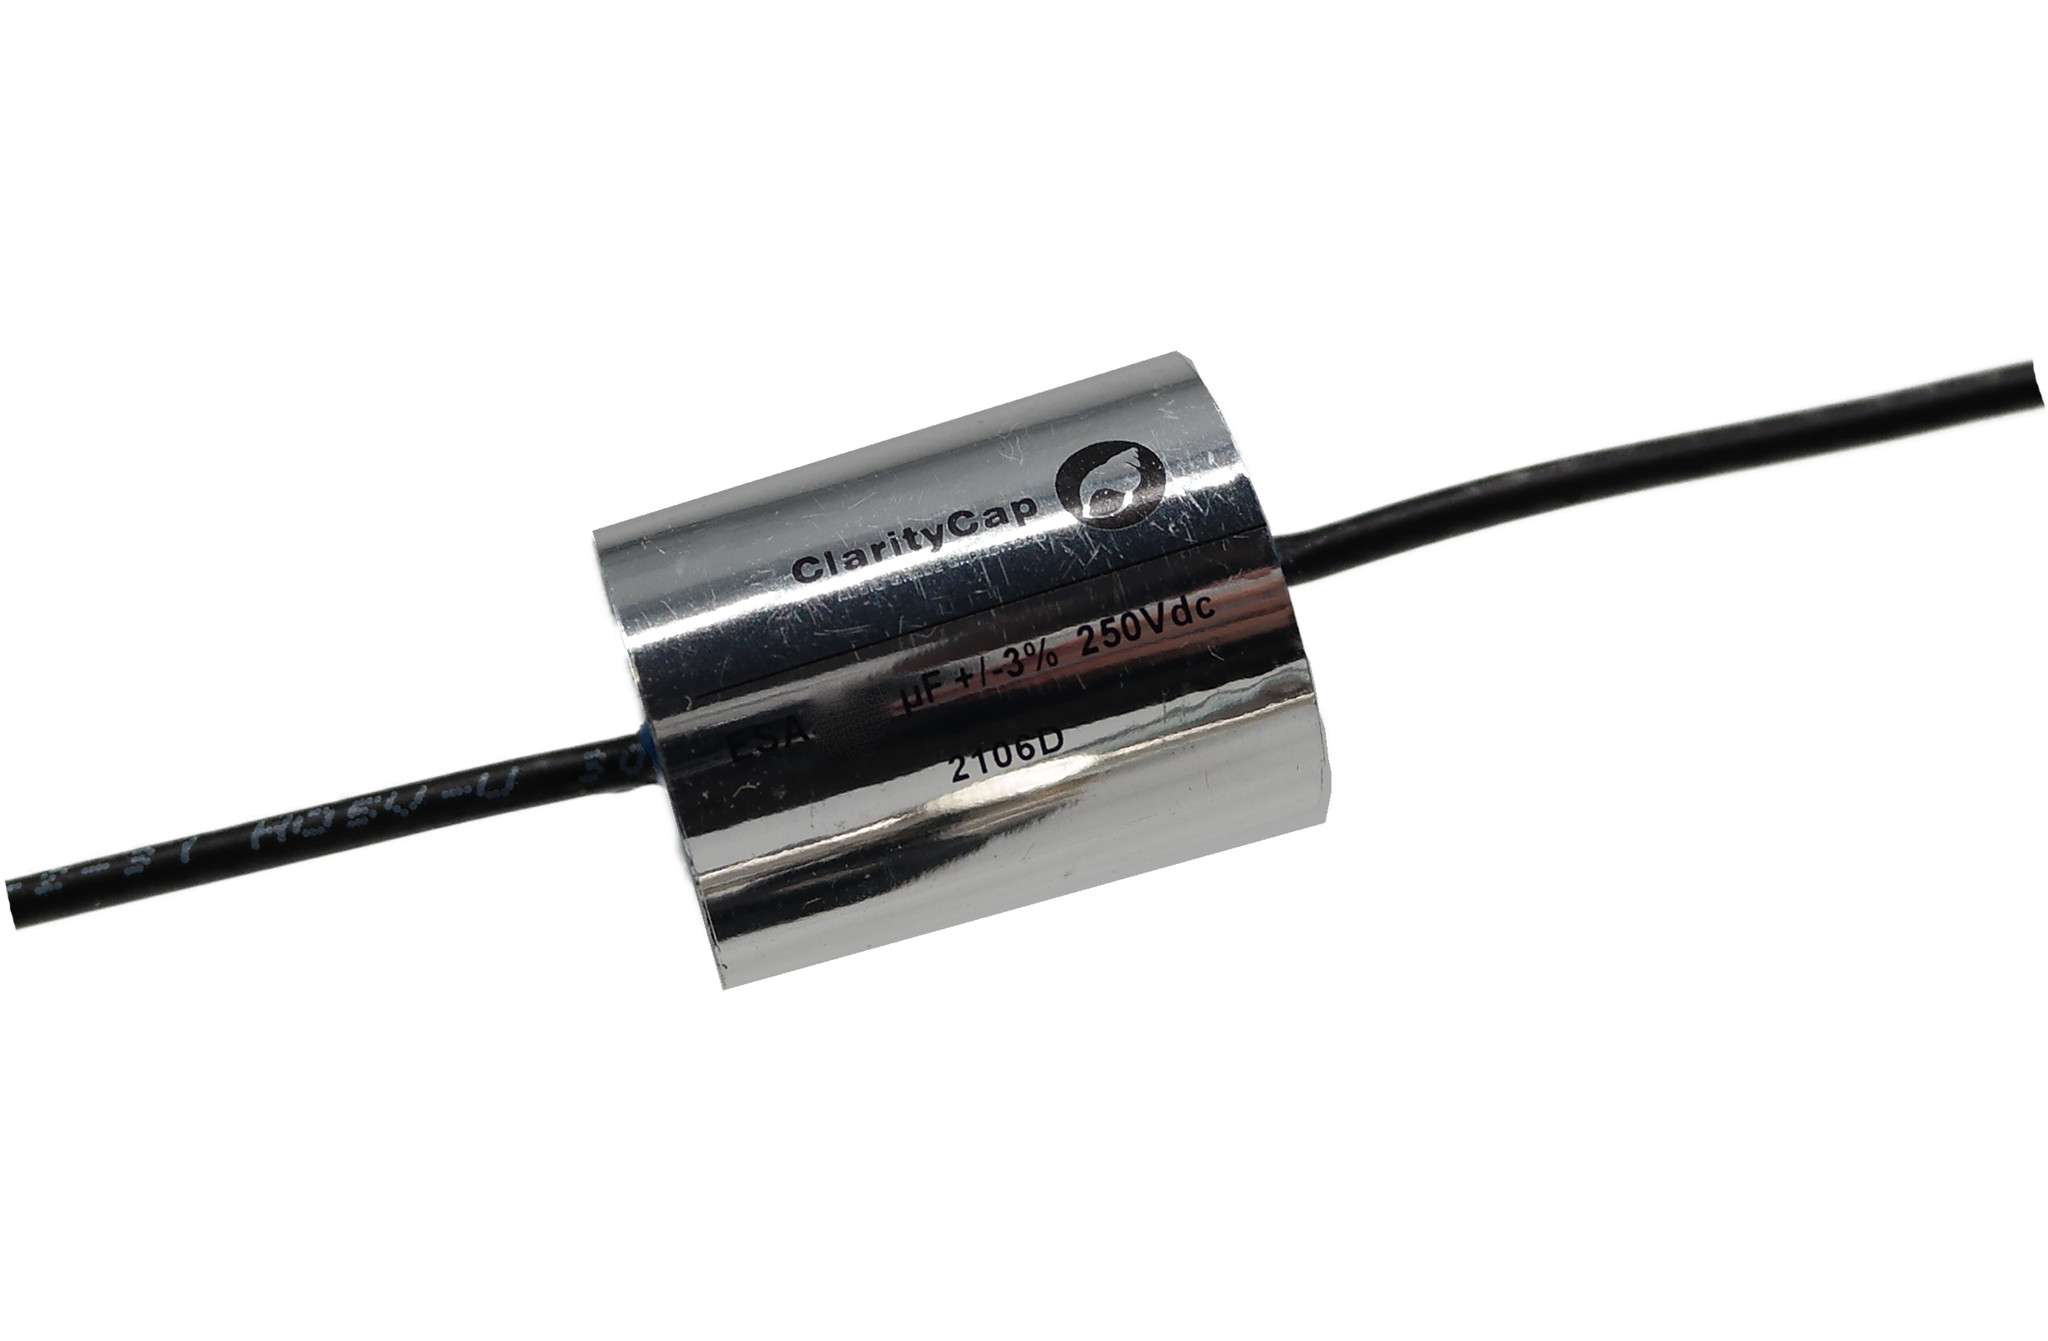 Condensatoare - Condensator film ClarityCap ESA3u3H250Vdc | 3.3 µF | 3% | 250 V, audioclub.ro